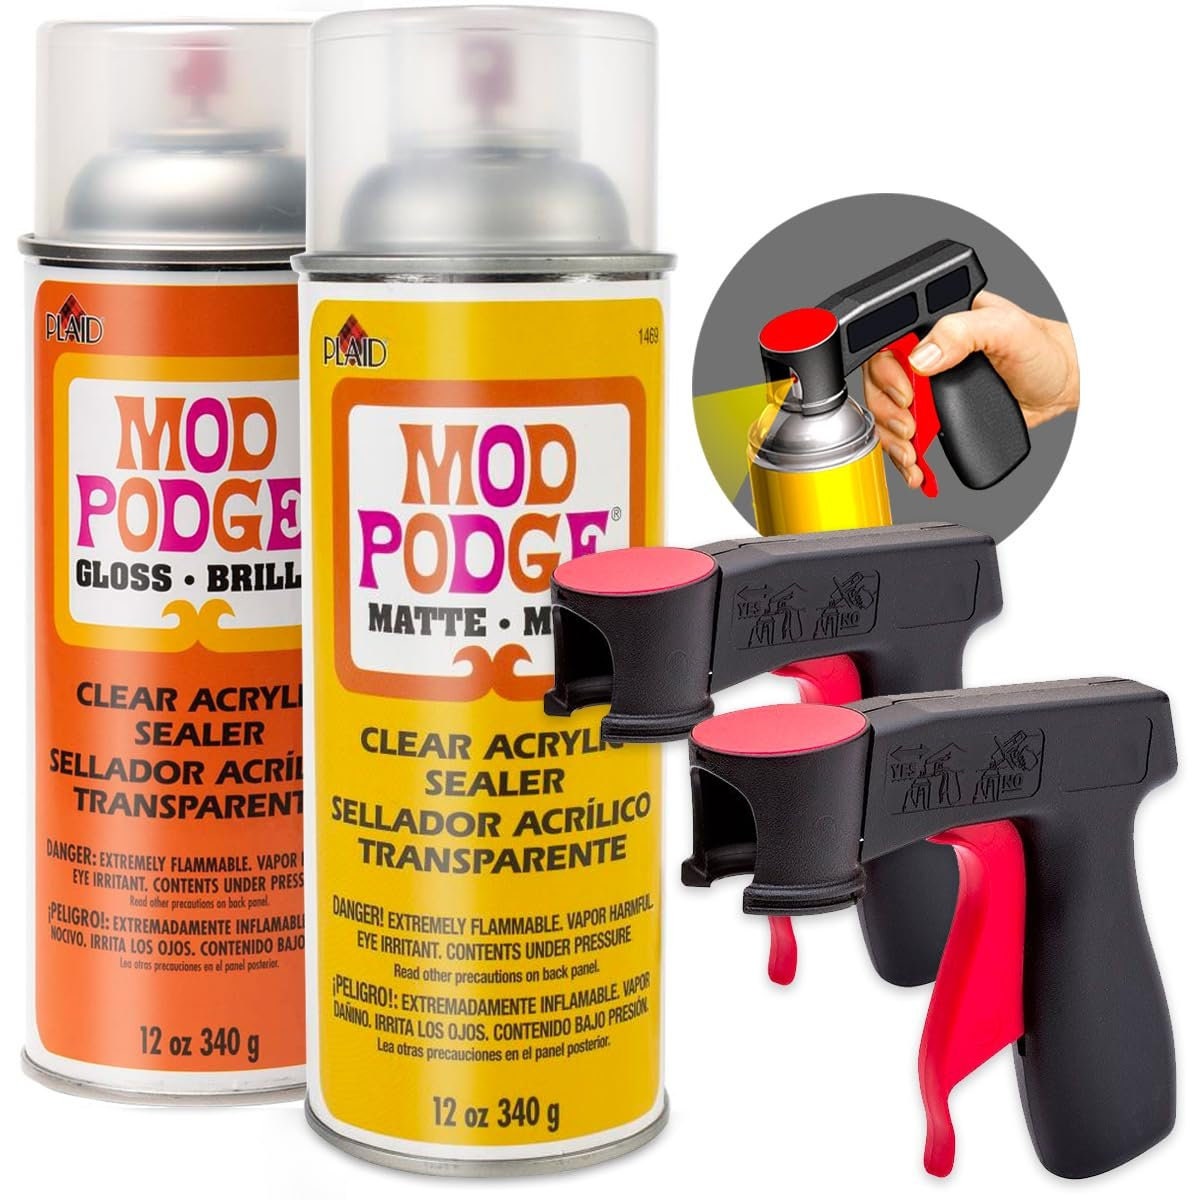  Mod Podge 1470 Clear Acrylic Sealer, 12 oz, Gloss (2)